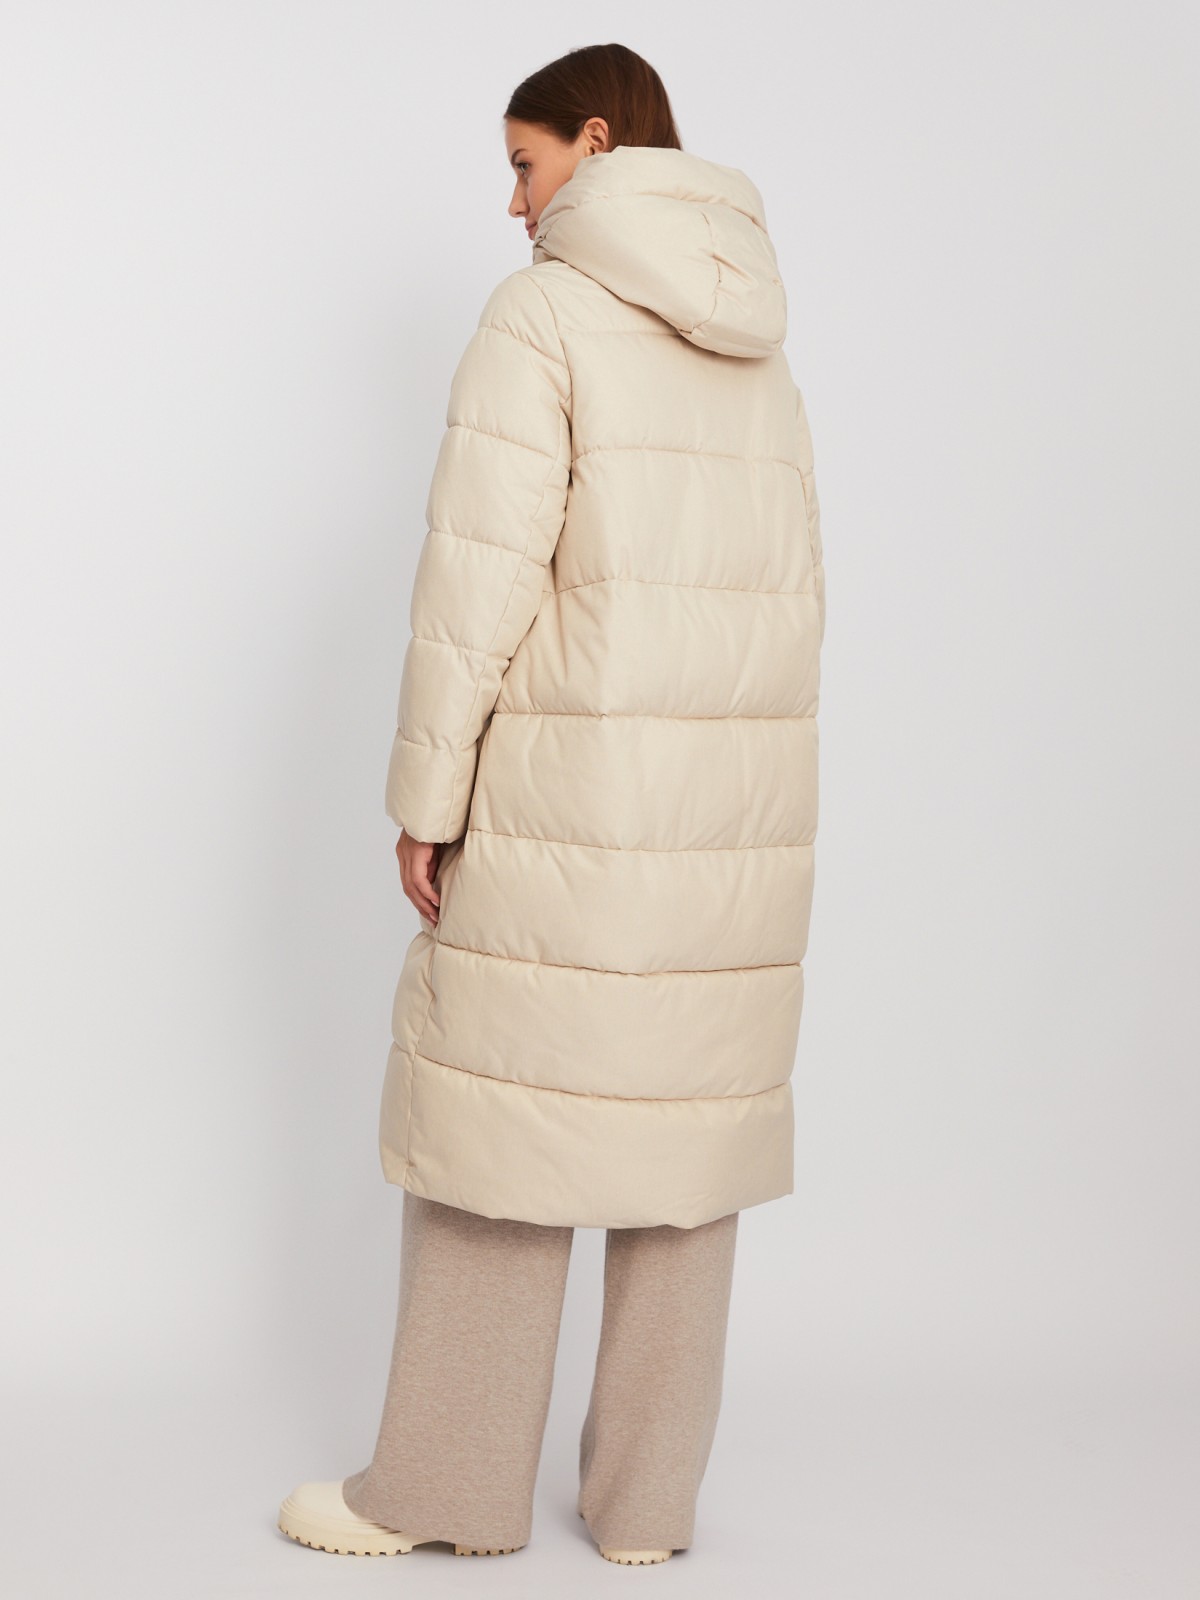 Тёплая длинная куртка-пальто с капюшоном zolla 02342520L044, цвет молоко, размер XS - фото 6